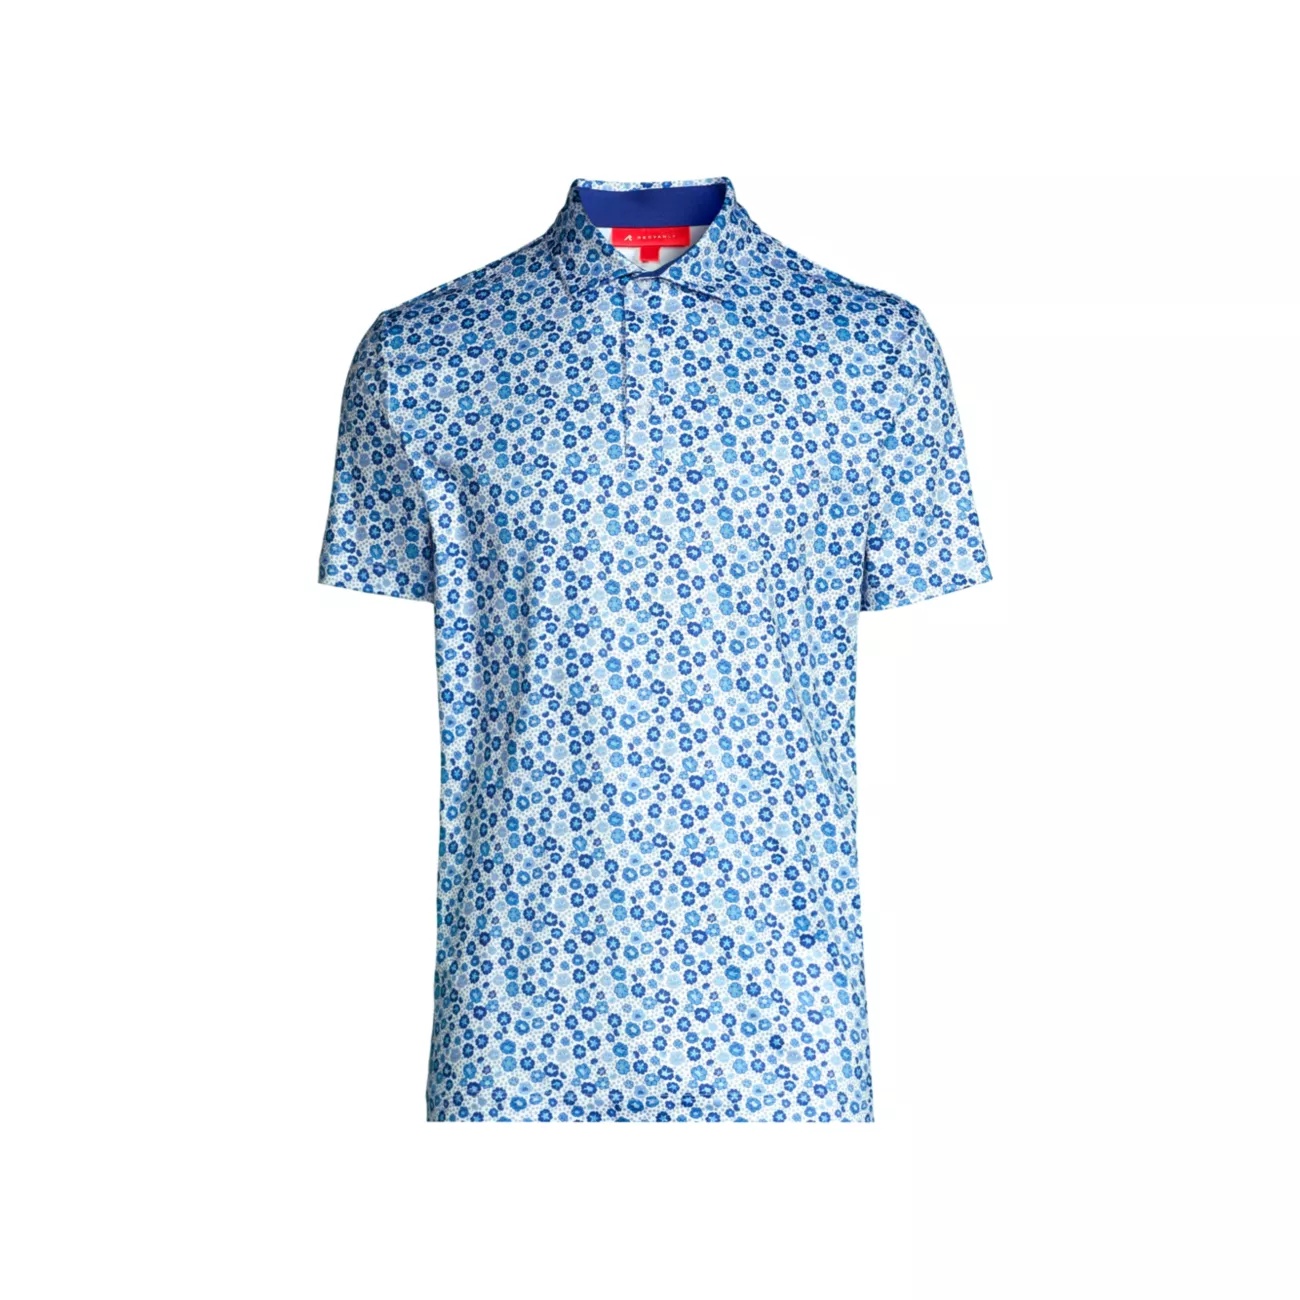 Мужская рубашка-поло Redvanly с цветочным принтом REDVANLY